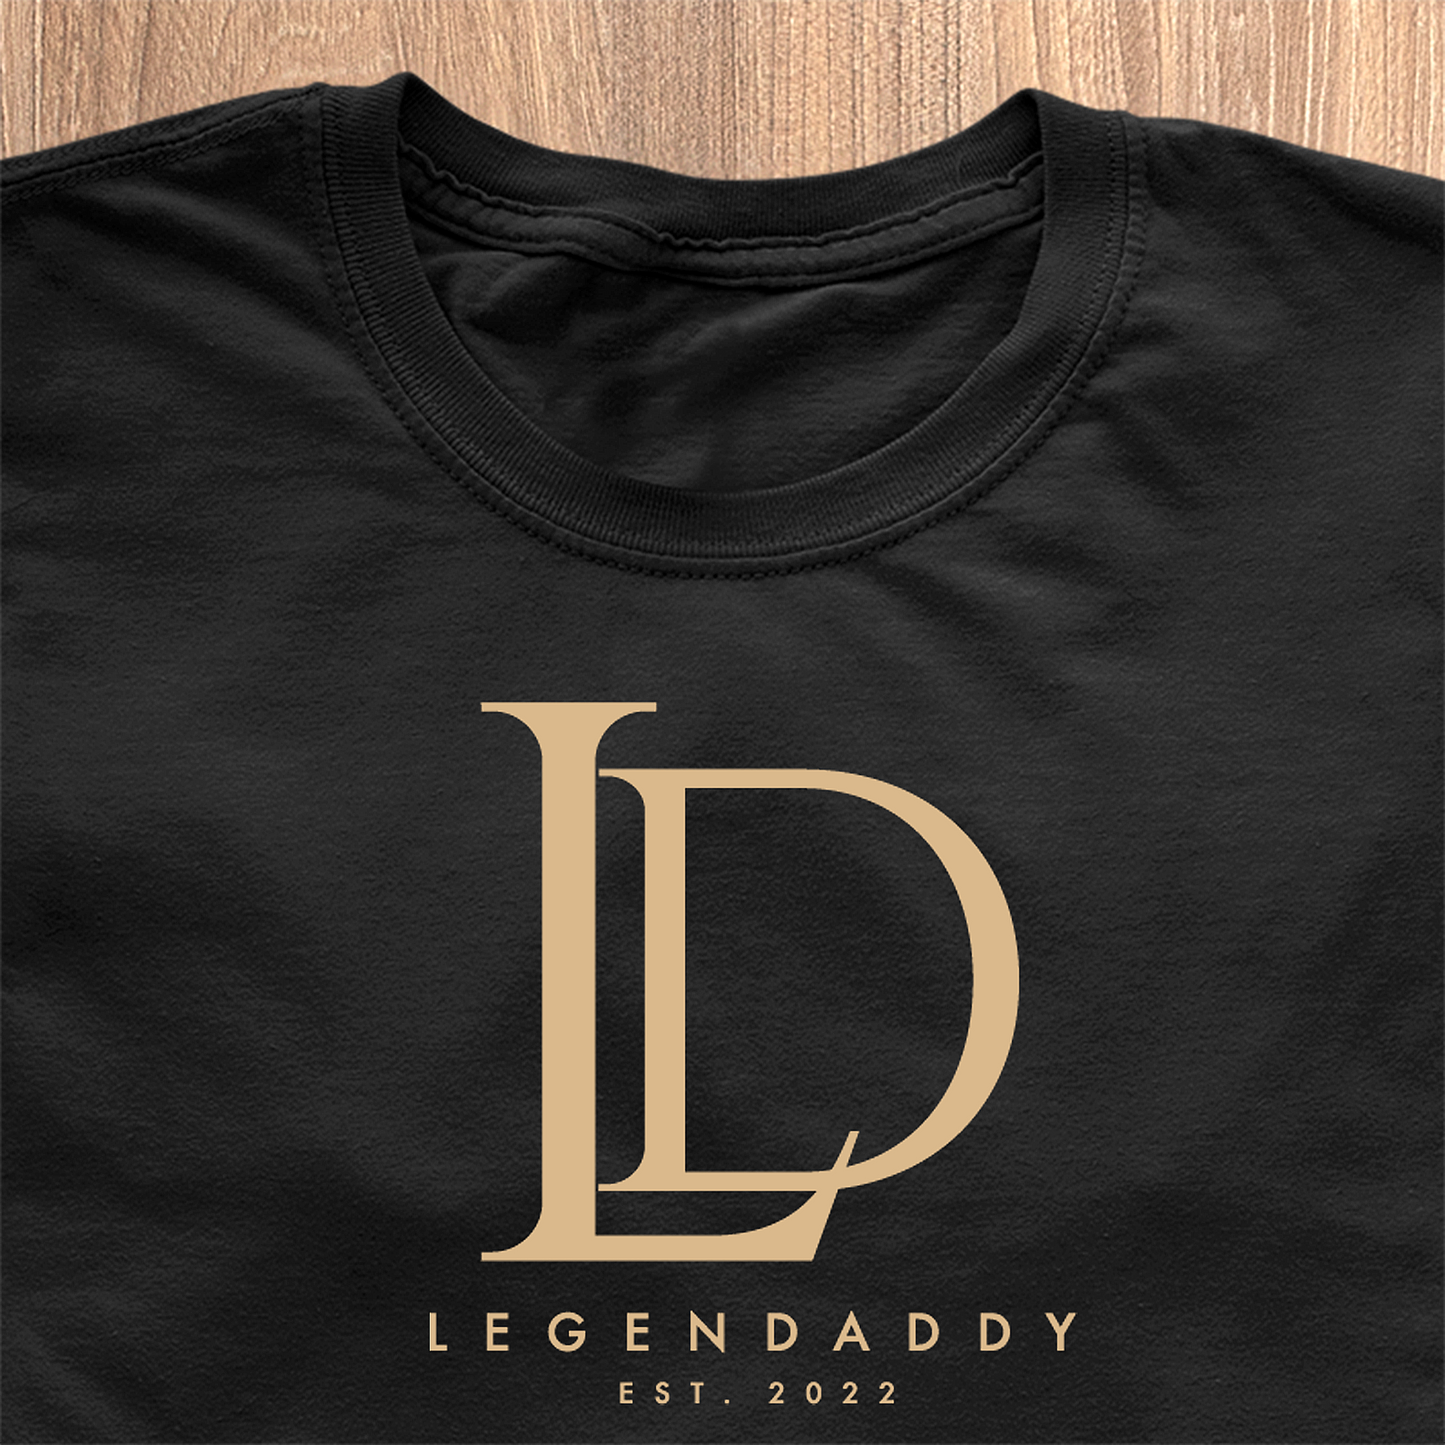 Legendaddy LD-LOGO T-Shirt - Date Customizable